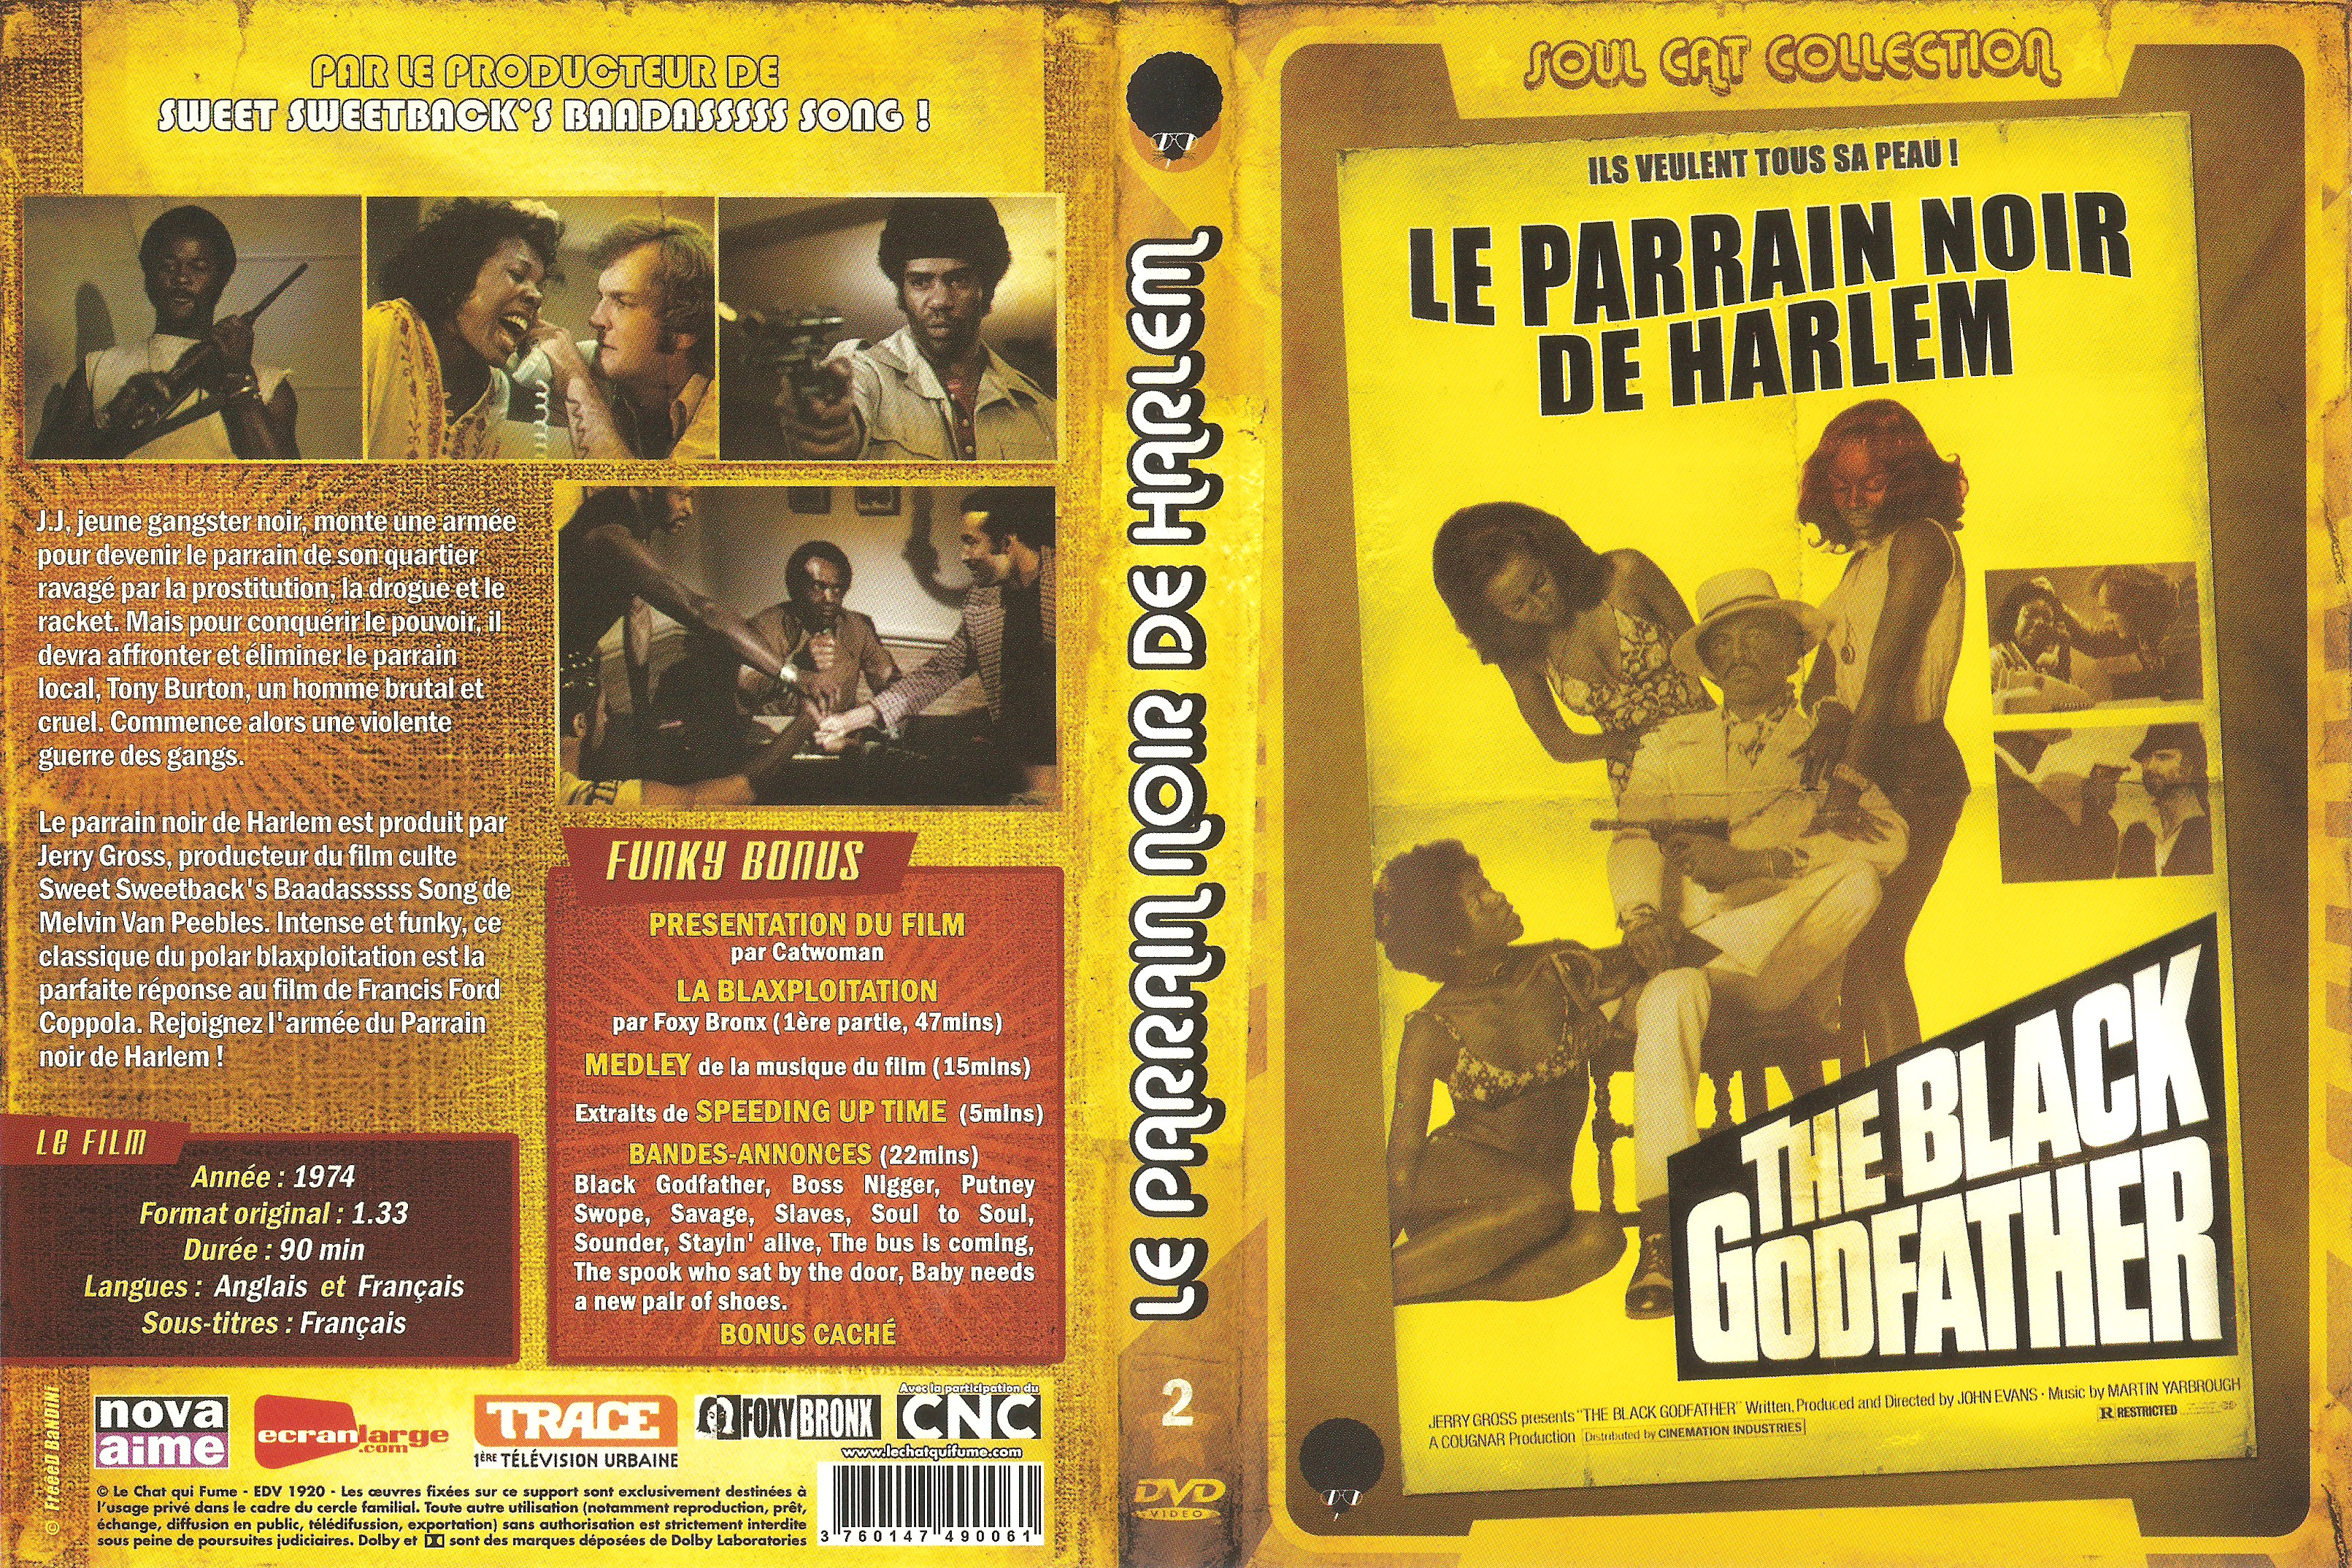 Jaquette DVD The black godfather - Le parrain noir de Harlem